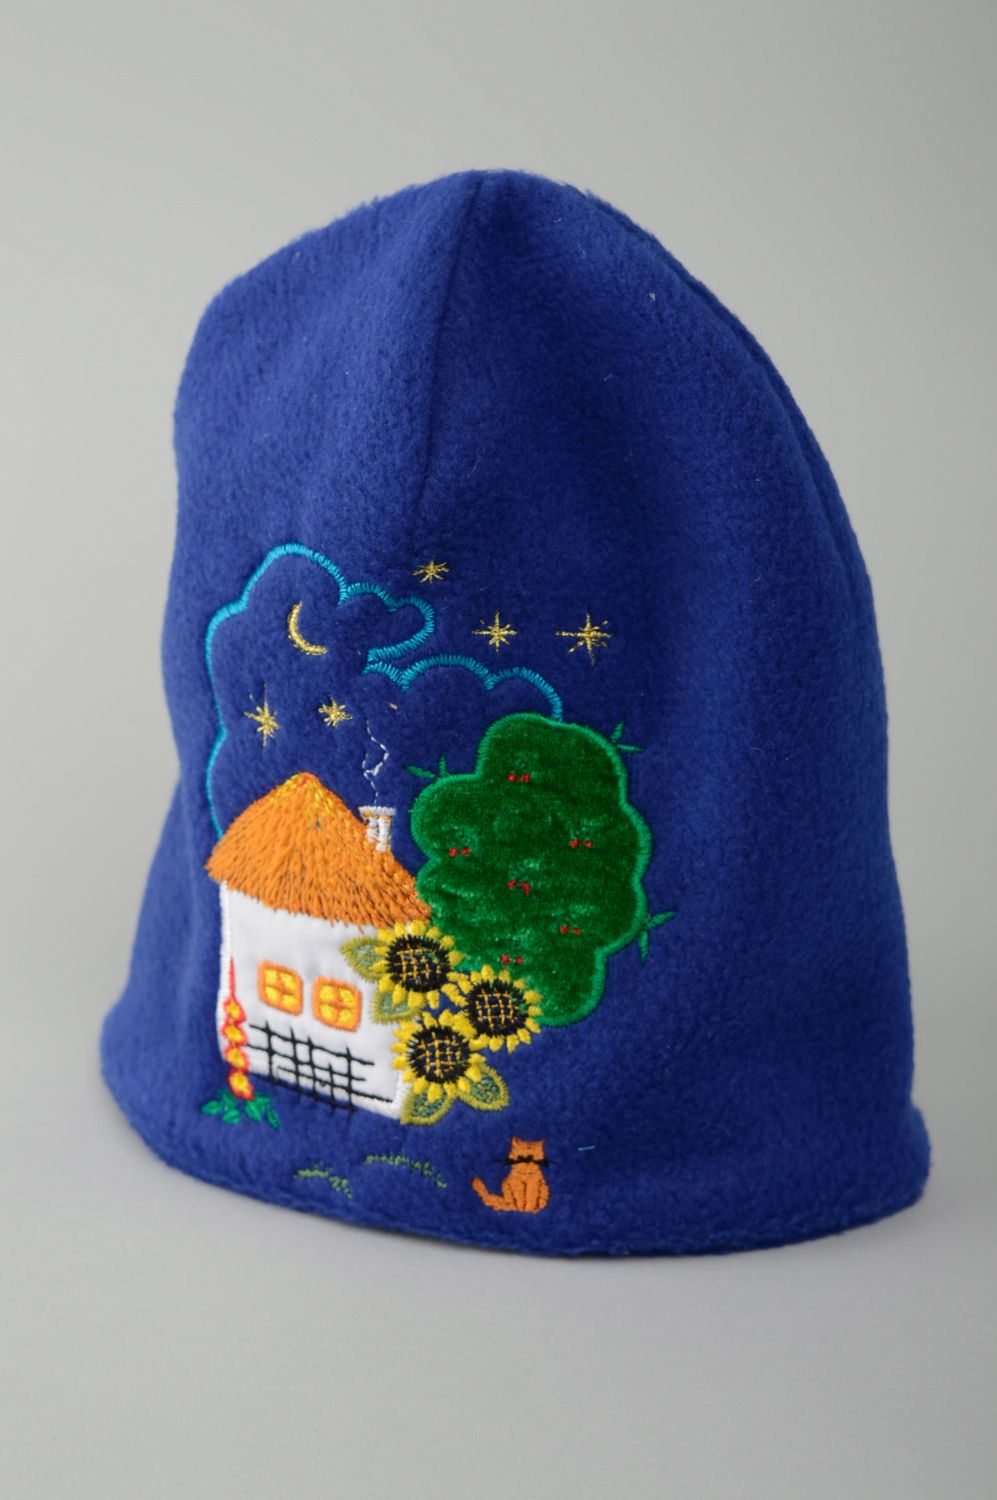 Bonnet bleu en tissu polaire avec paysage rural pour enfant photo 1